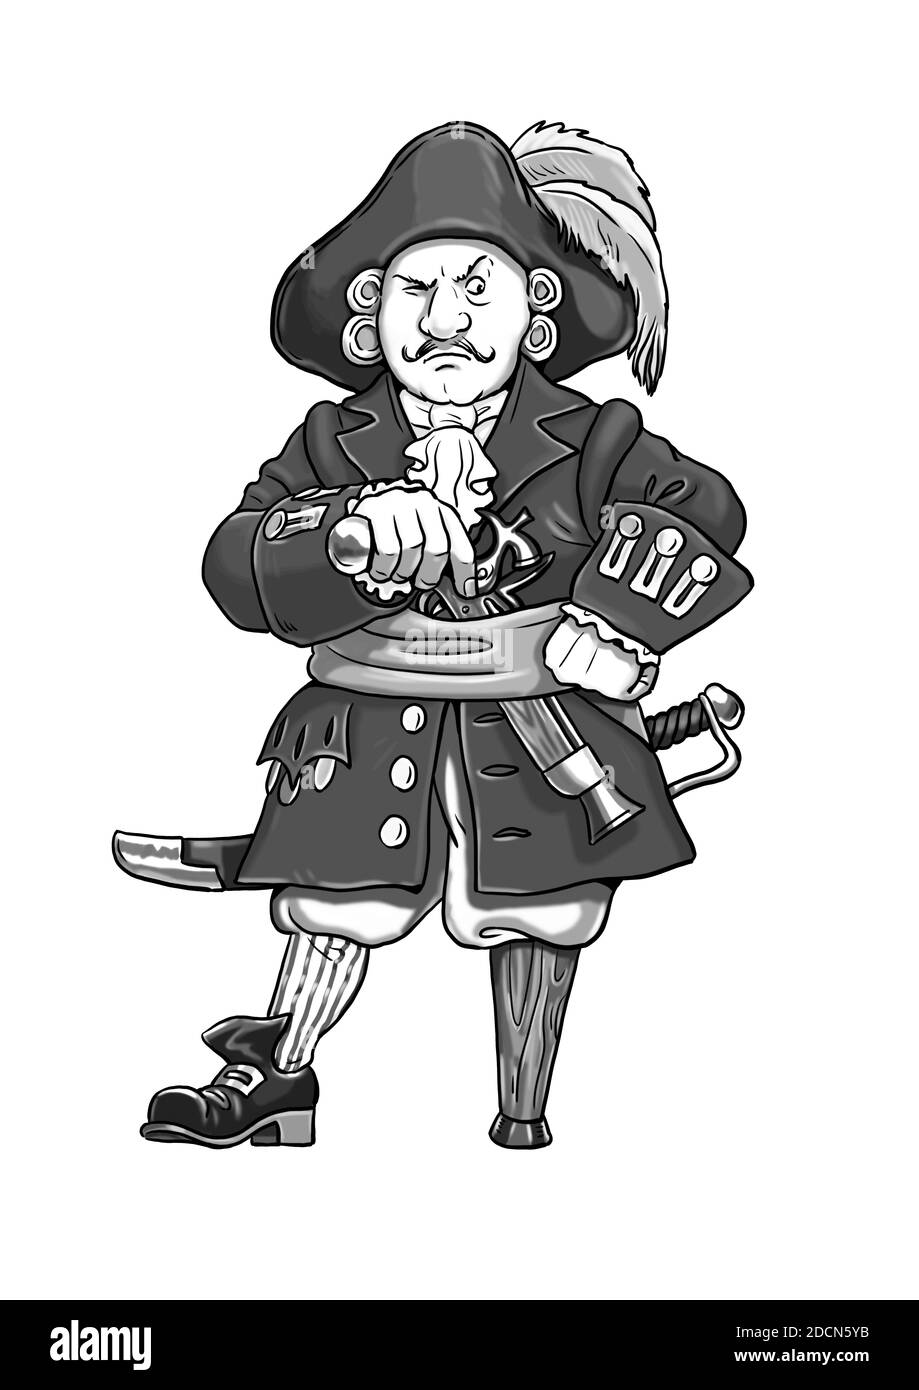 Pirat Kapitän mit dem Holzbein Cartoon. Witziger Kapitän Flint. Schwarz-weiße Zeichnung. Stockfoto